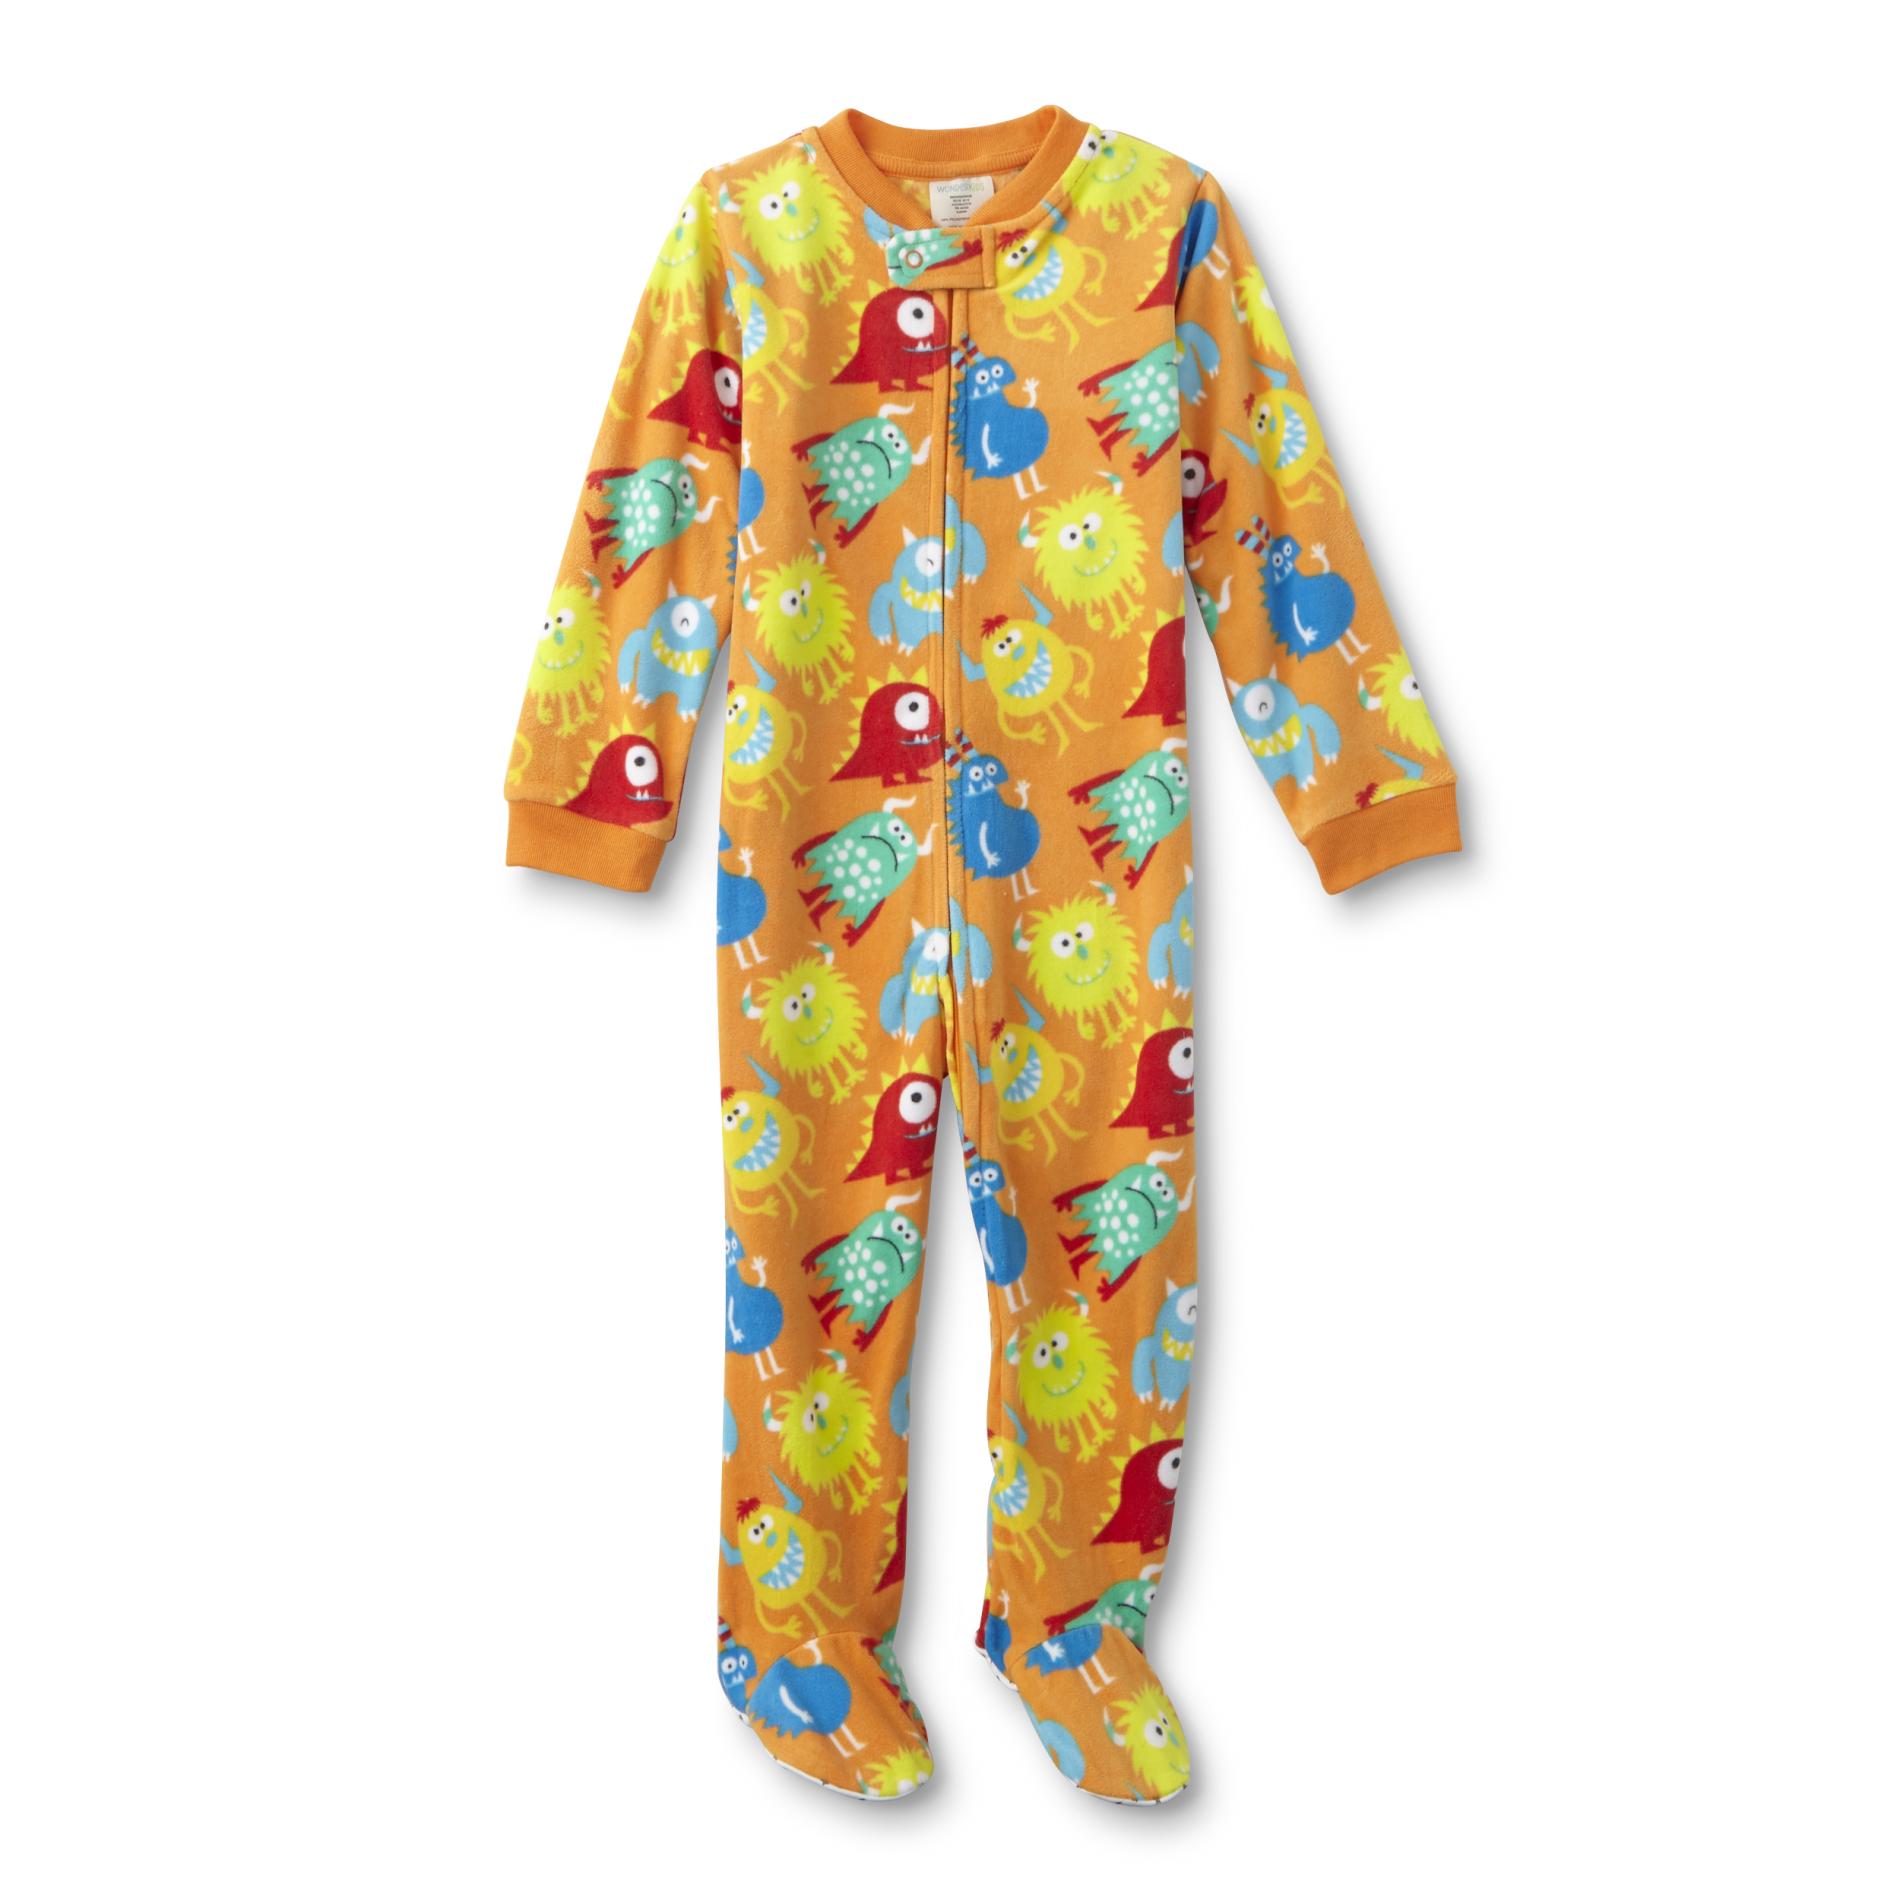 WonderKids Infant & Toddler Boys' Fleece Sleeper Pajamas - Monster